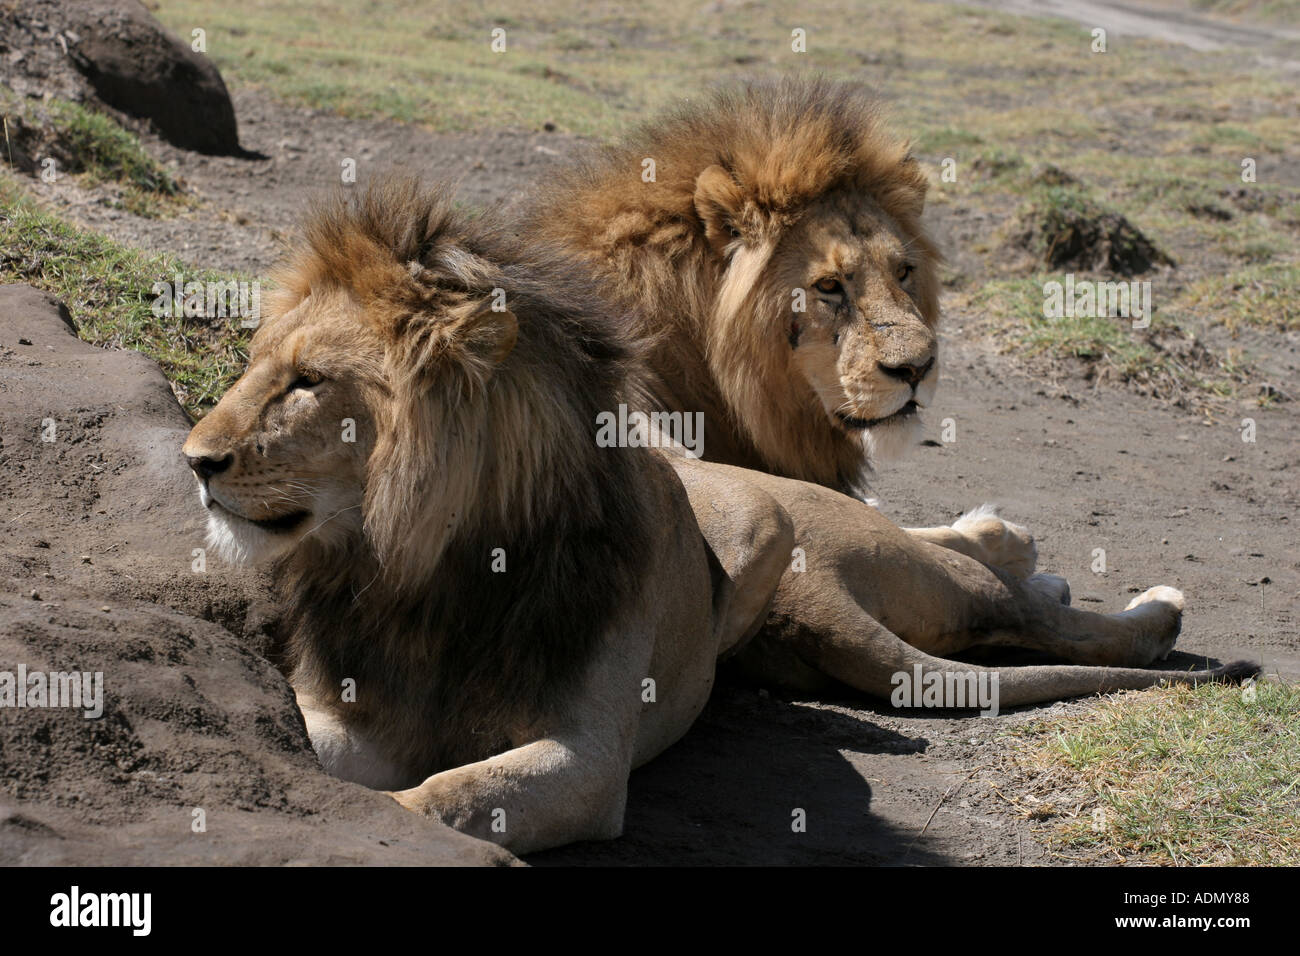 male lion tanzania Ngorongoro Crater Stock Photo